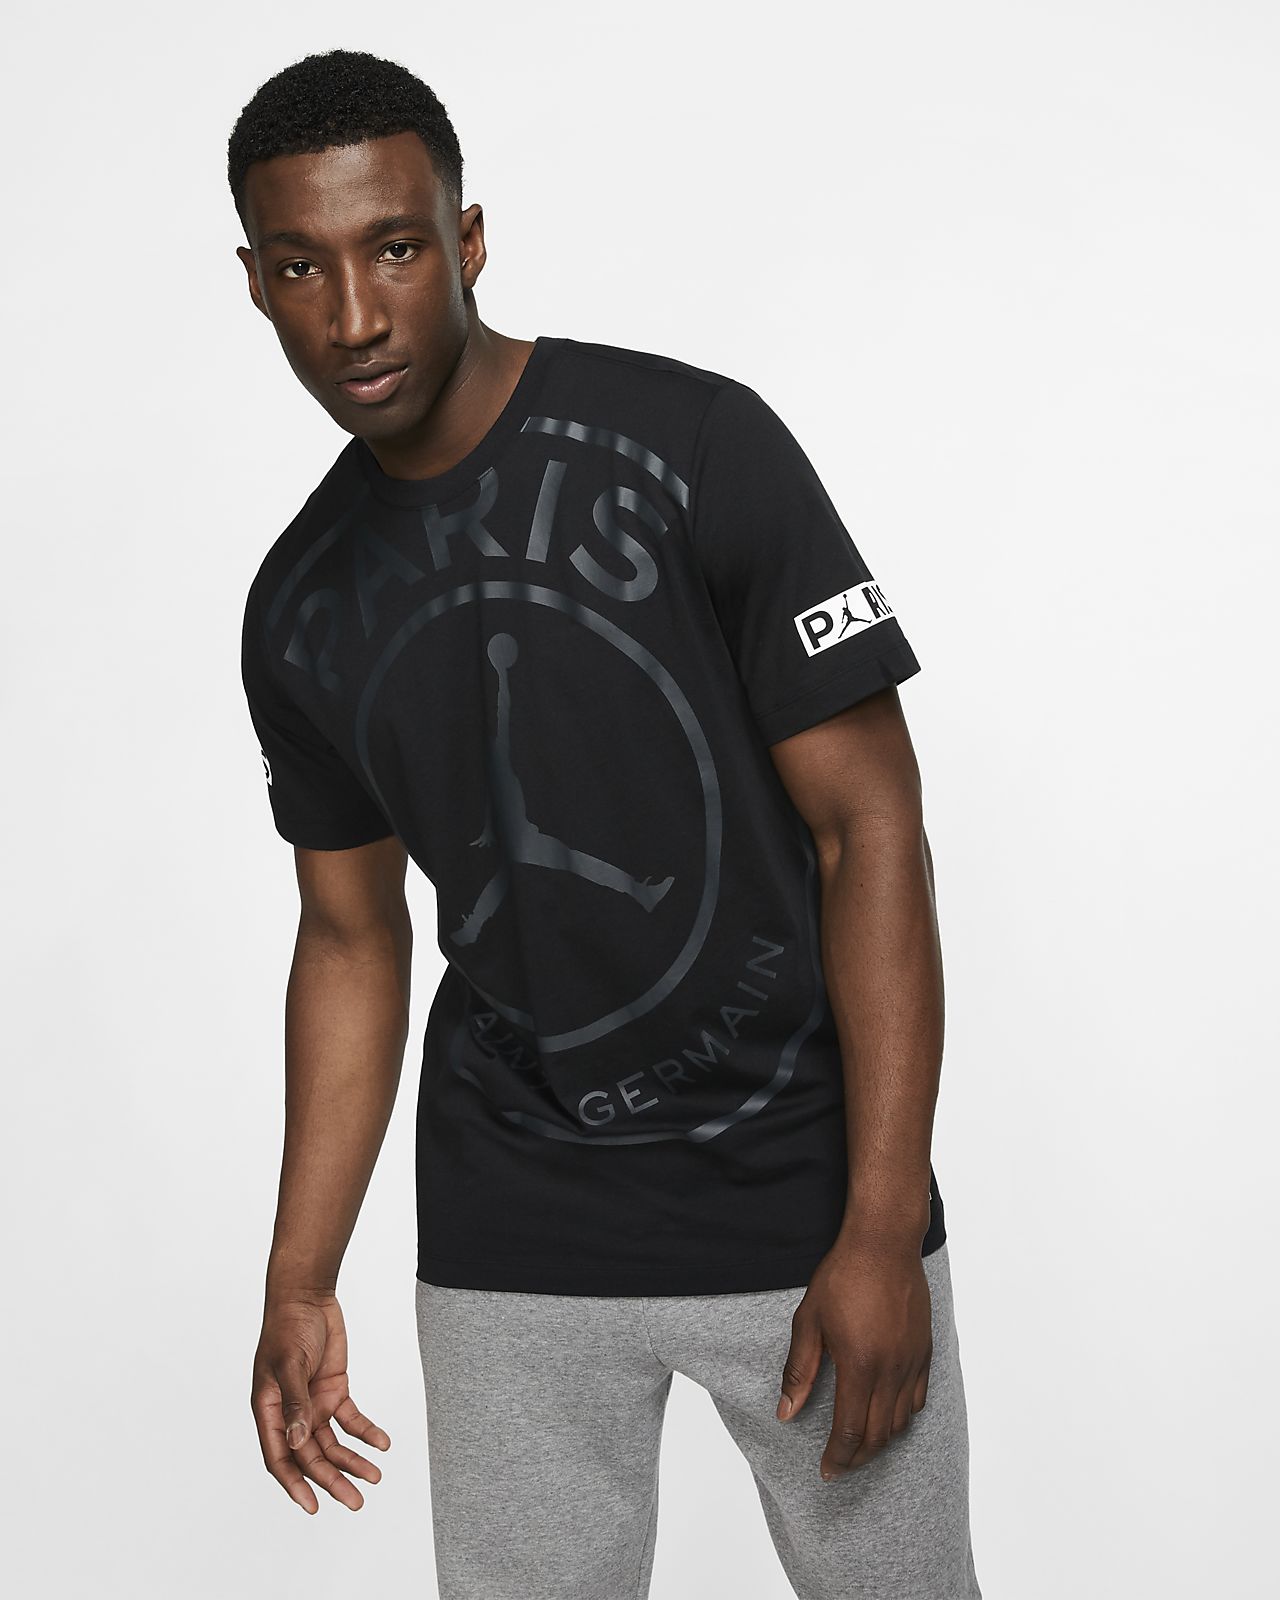 Paris Saint-Germain Men's Logo T-Shirt. Nike NZ